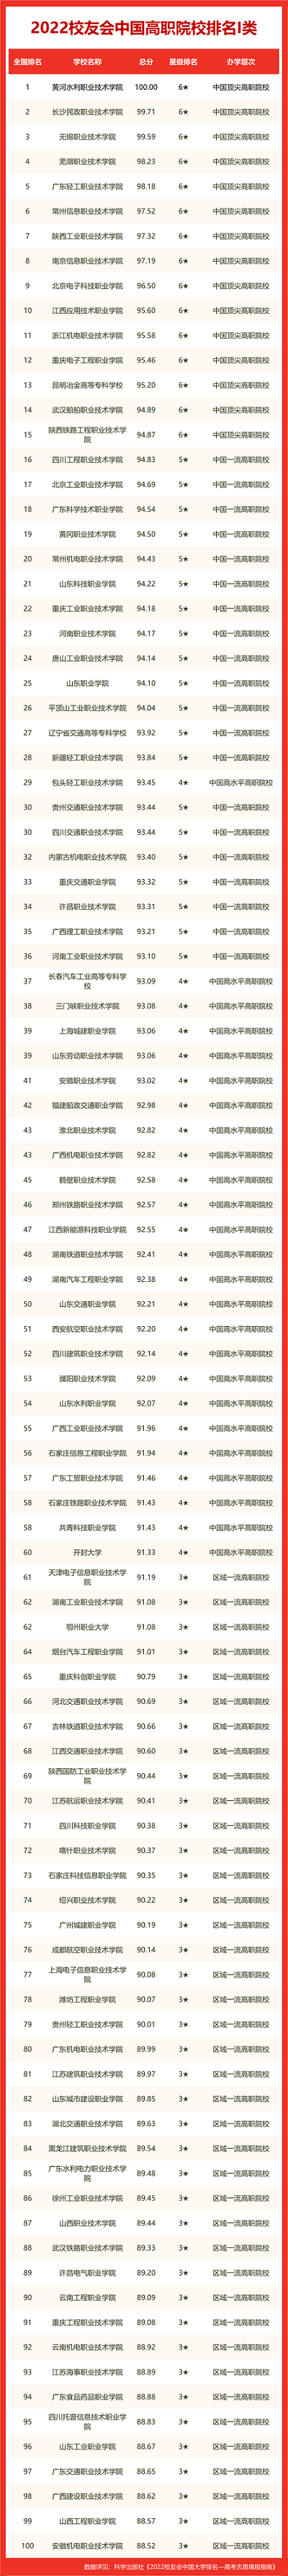  2022年中国高职院校最新排名 前100大学有哪些